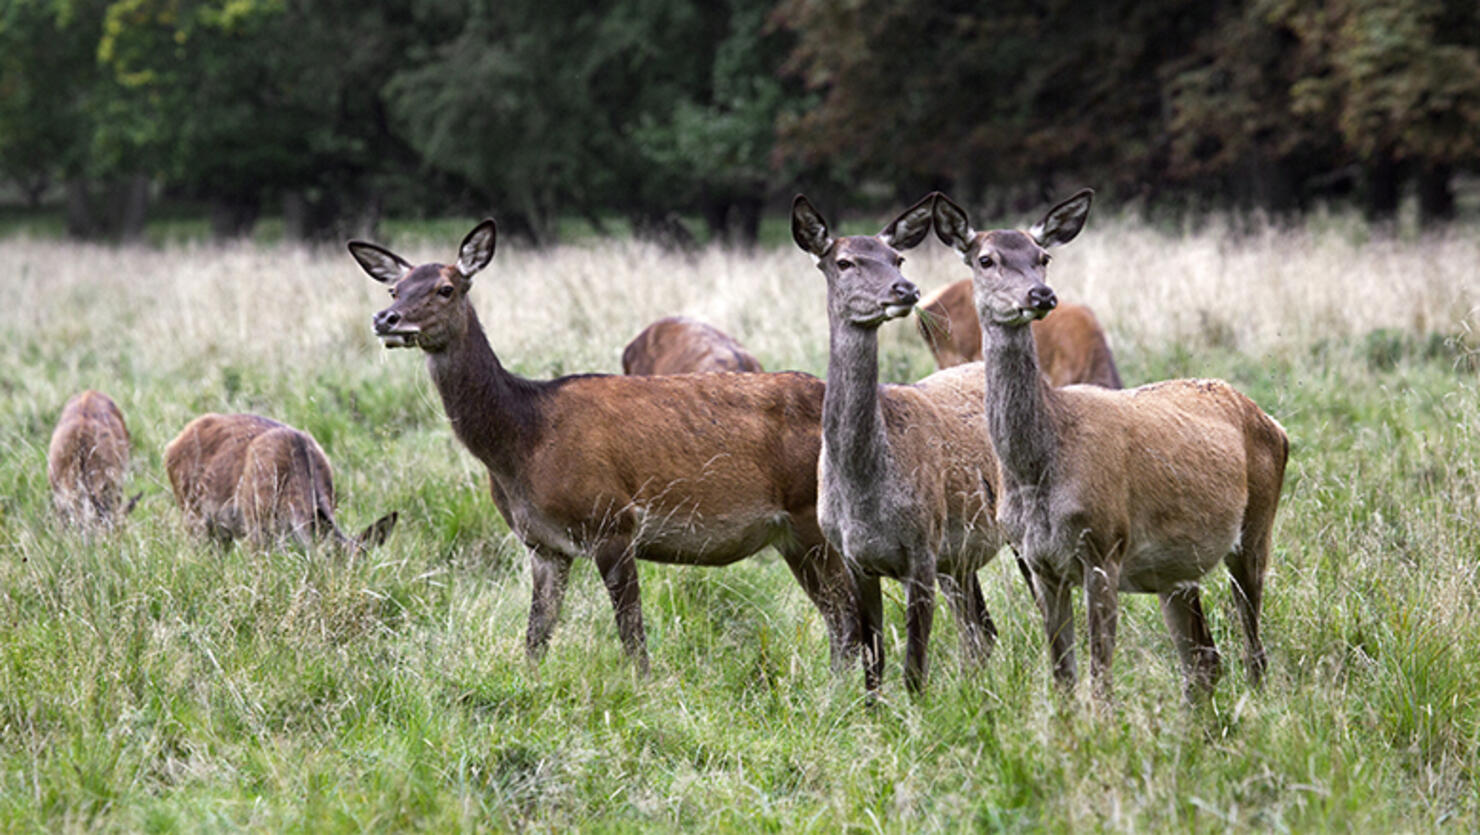 Herd of red deer hinds / females in heat grazing in grassland.